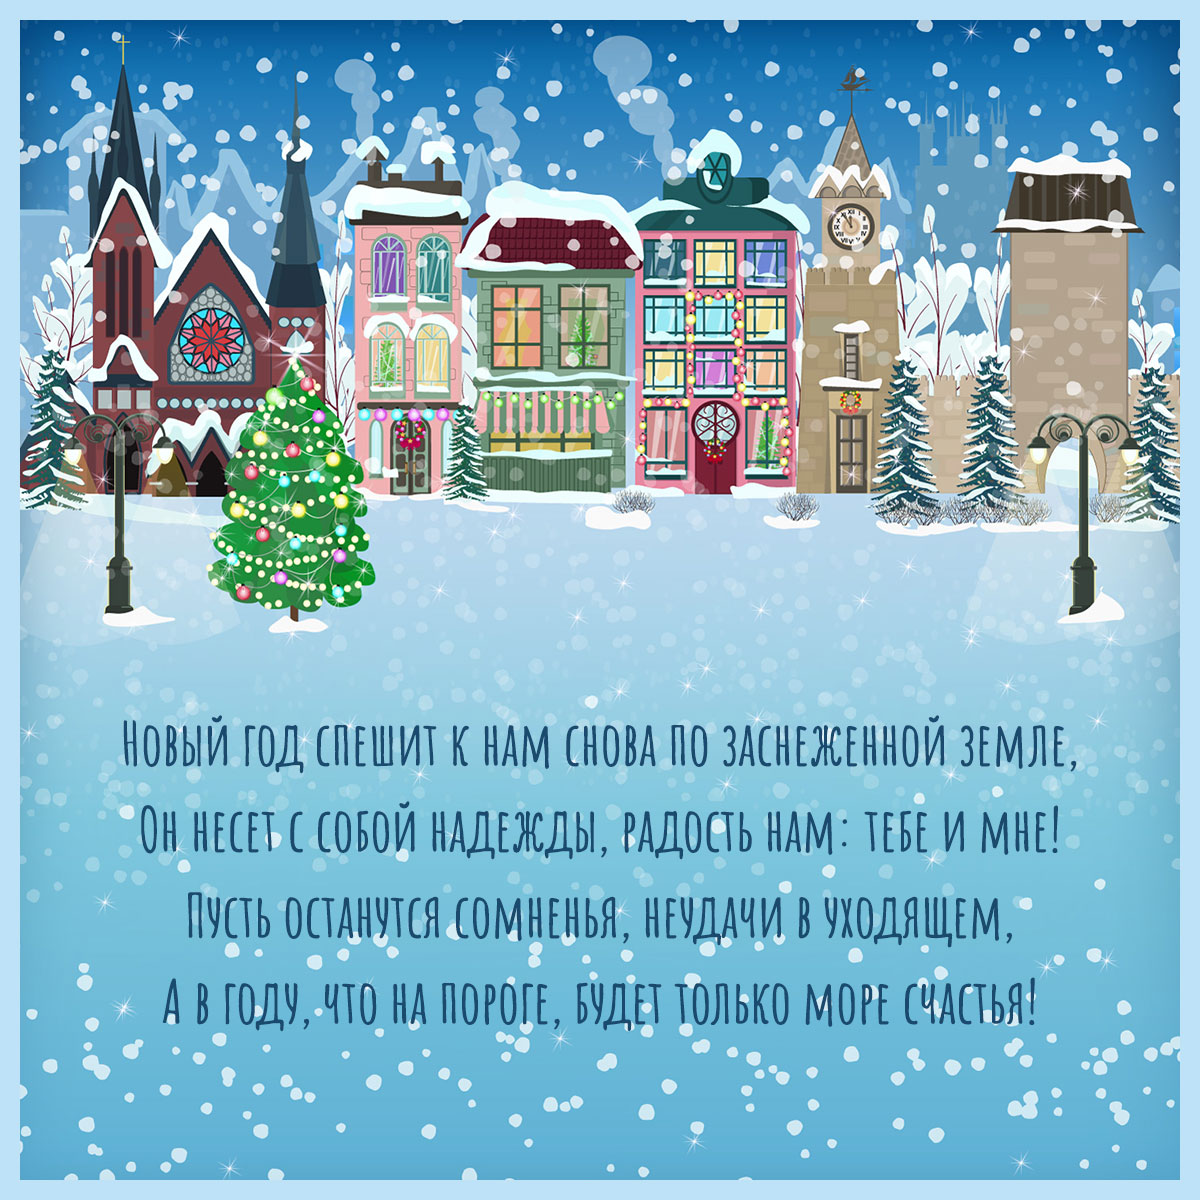 Голубая открытка с текстом поздравления с новым годом на фоне зимнего пейзажа европейских домов.